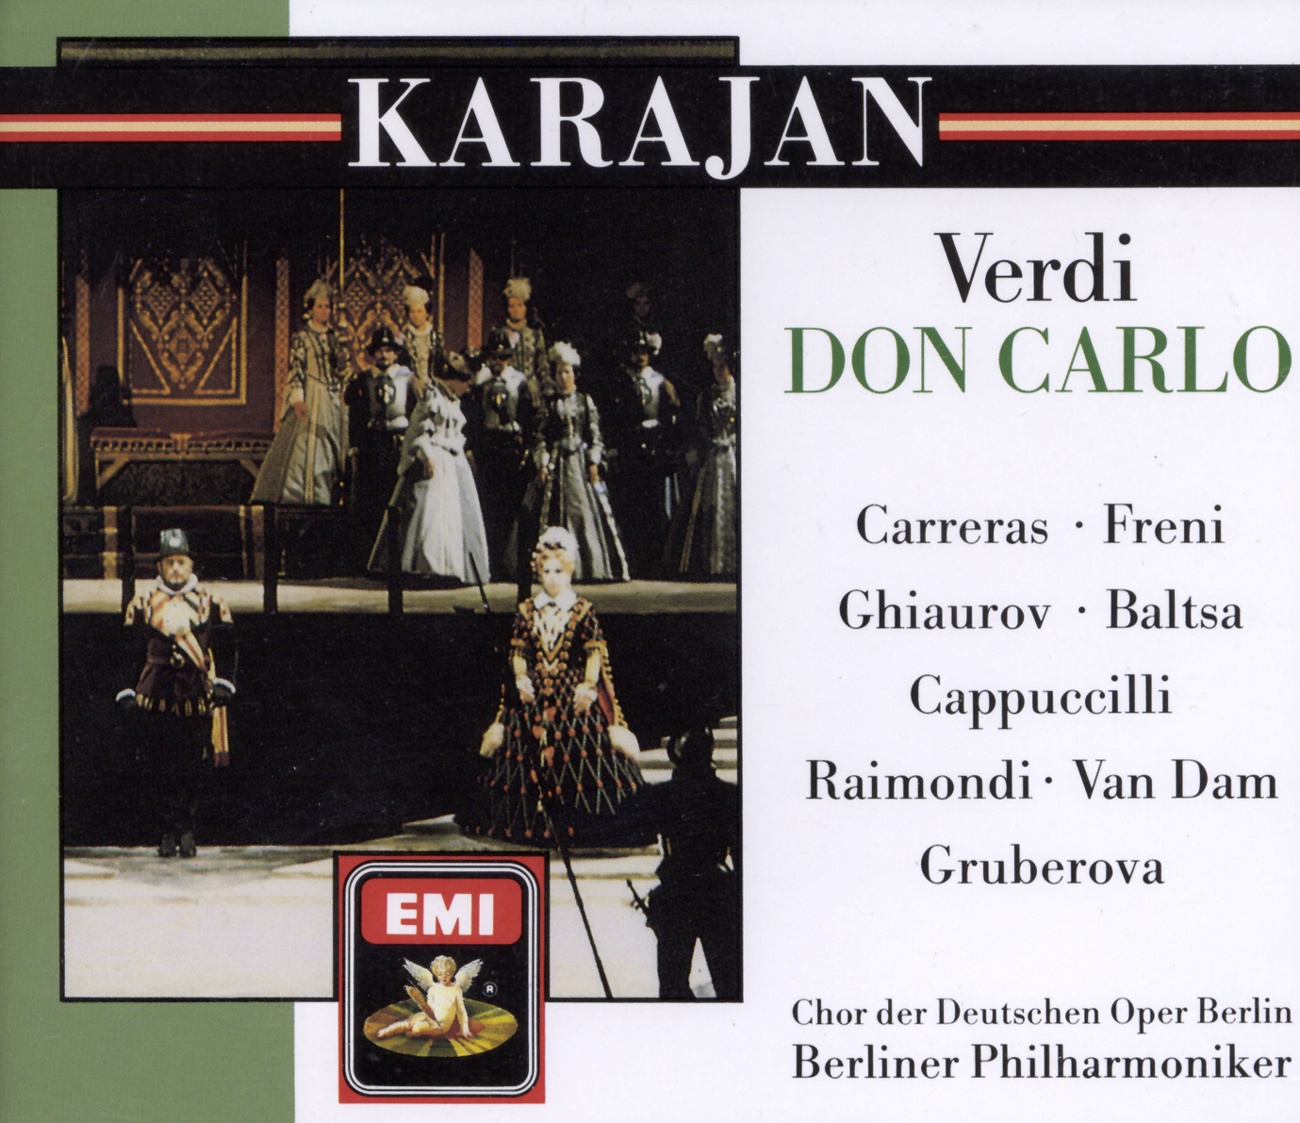 Don Carlo (1884 4 Act Version) (1988 Digital Remaster), ATTO PRIMO/ACT 1/ERSTER AKT/PREMIER ACTE, Scena prima/Scene 1/Vierte Szene/Première Scène: Il duolo della terra (Un frate/Carlo)